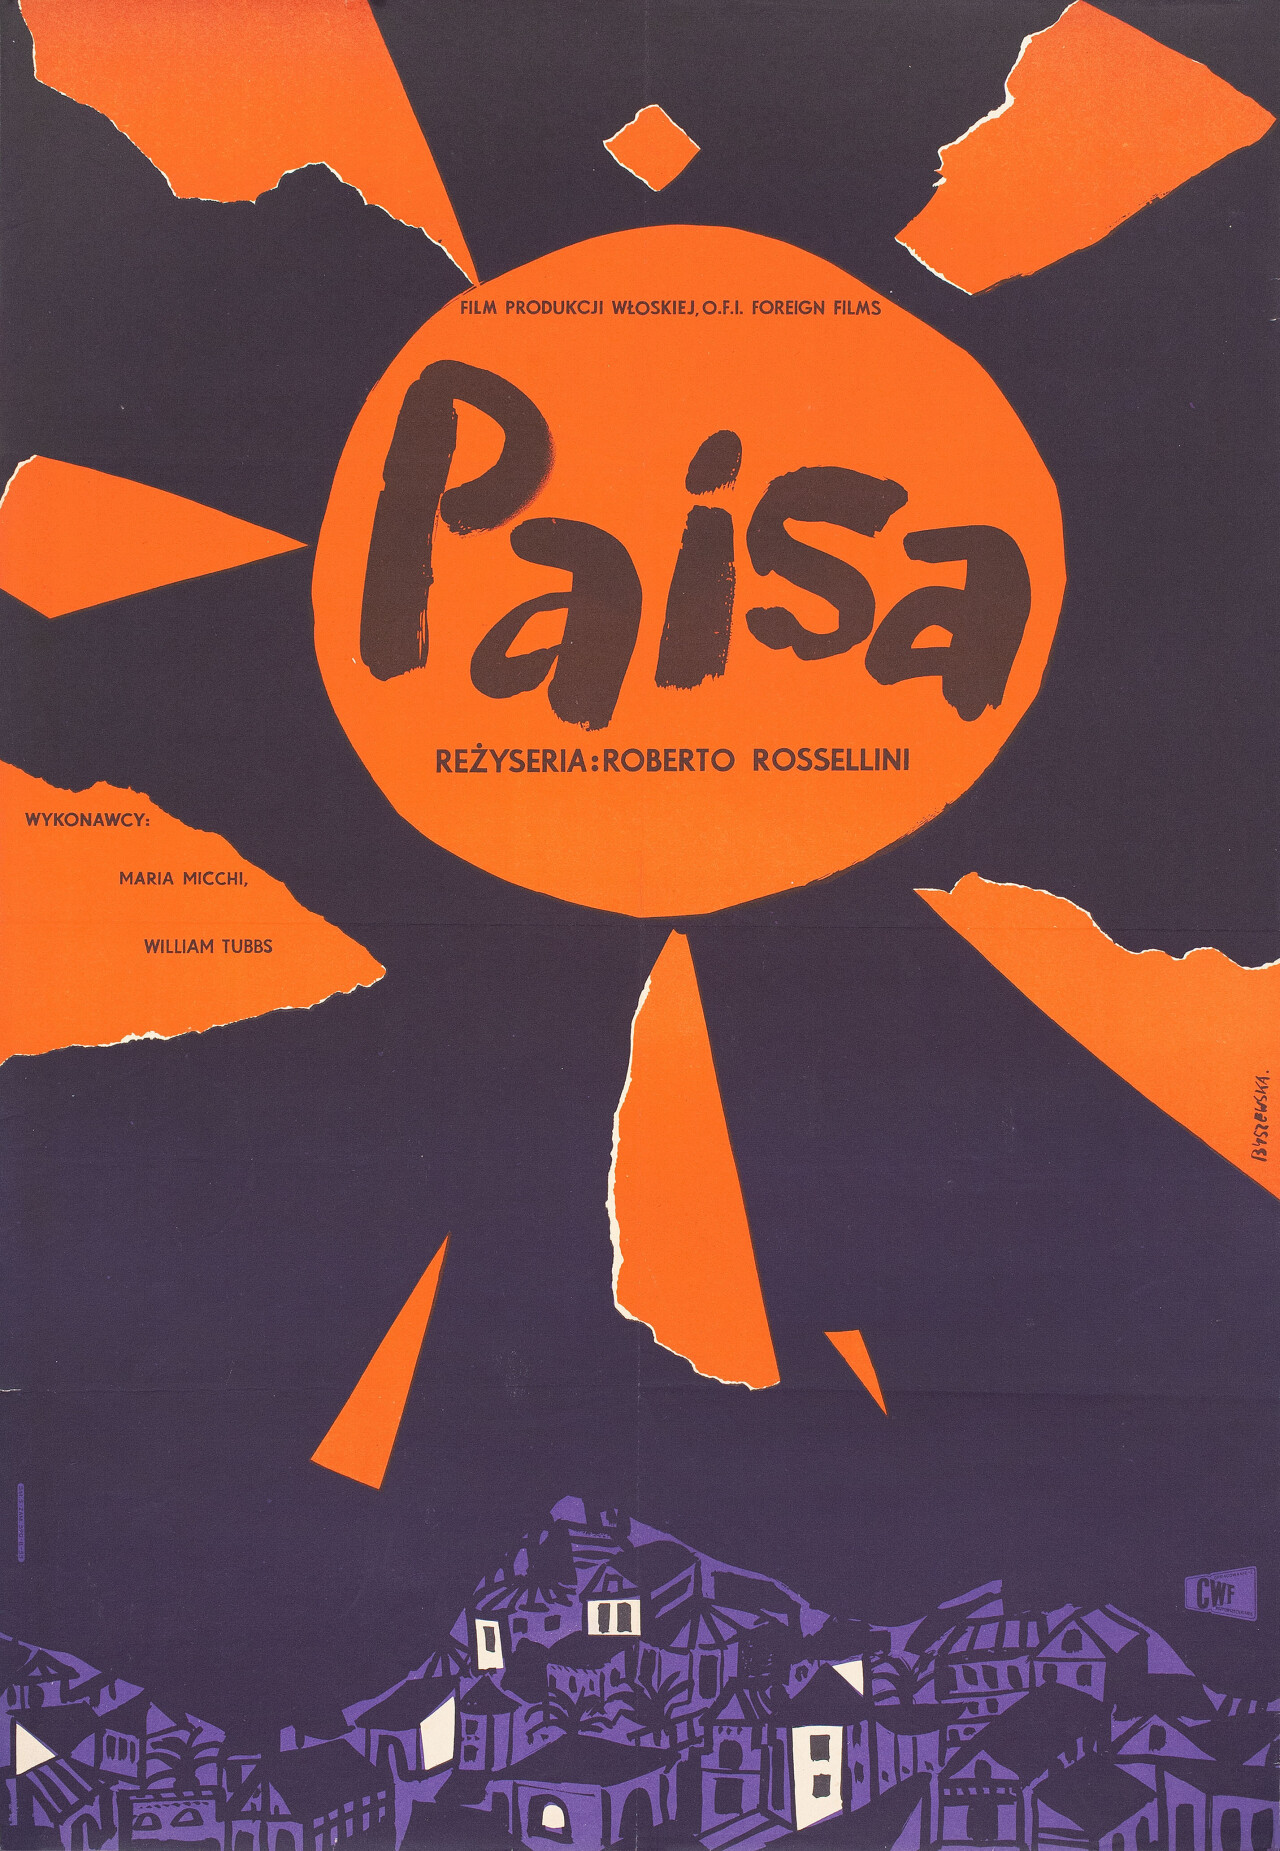 Земляк (Paisan, 1946), режиссёр Роберто Росселлини, минималистичный постер к фильму (Польша, 1957 год), автор Тереза ​​Бышевска